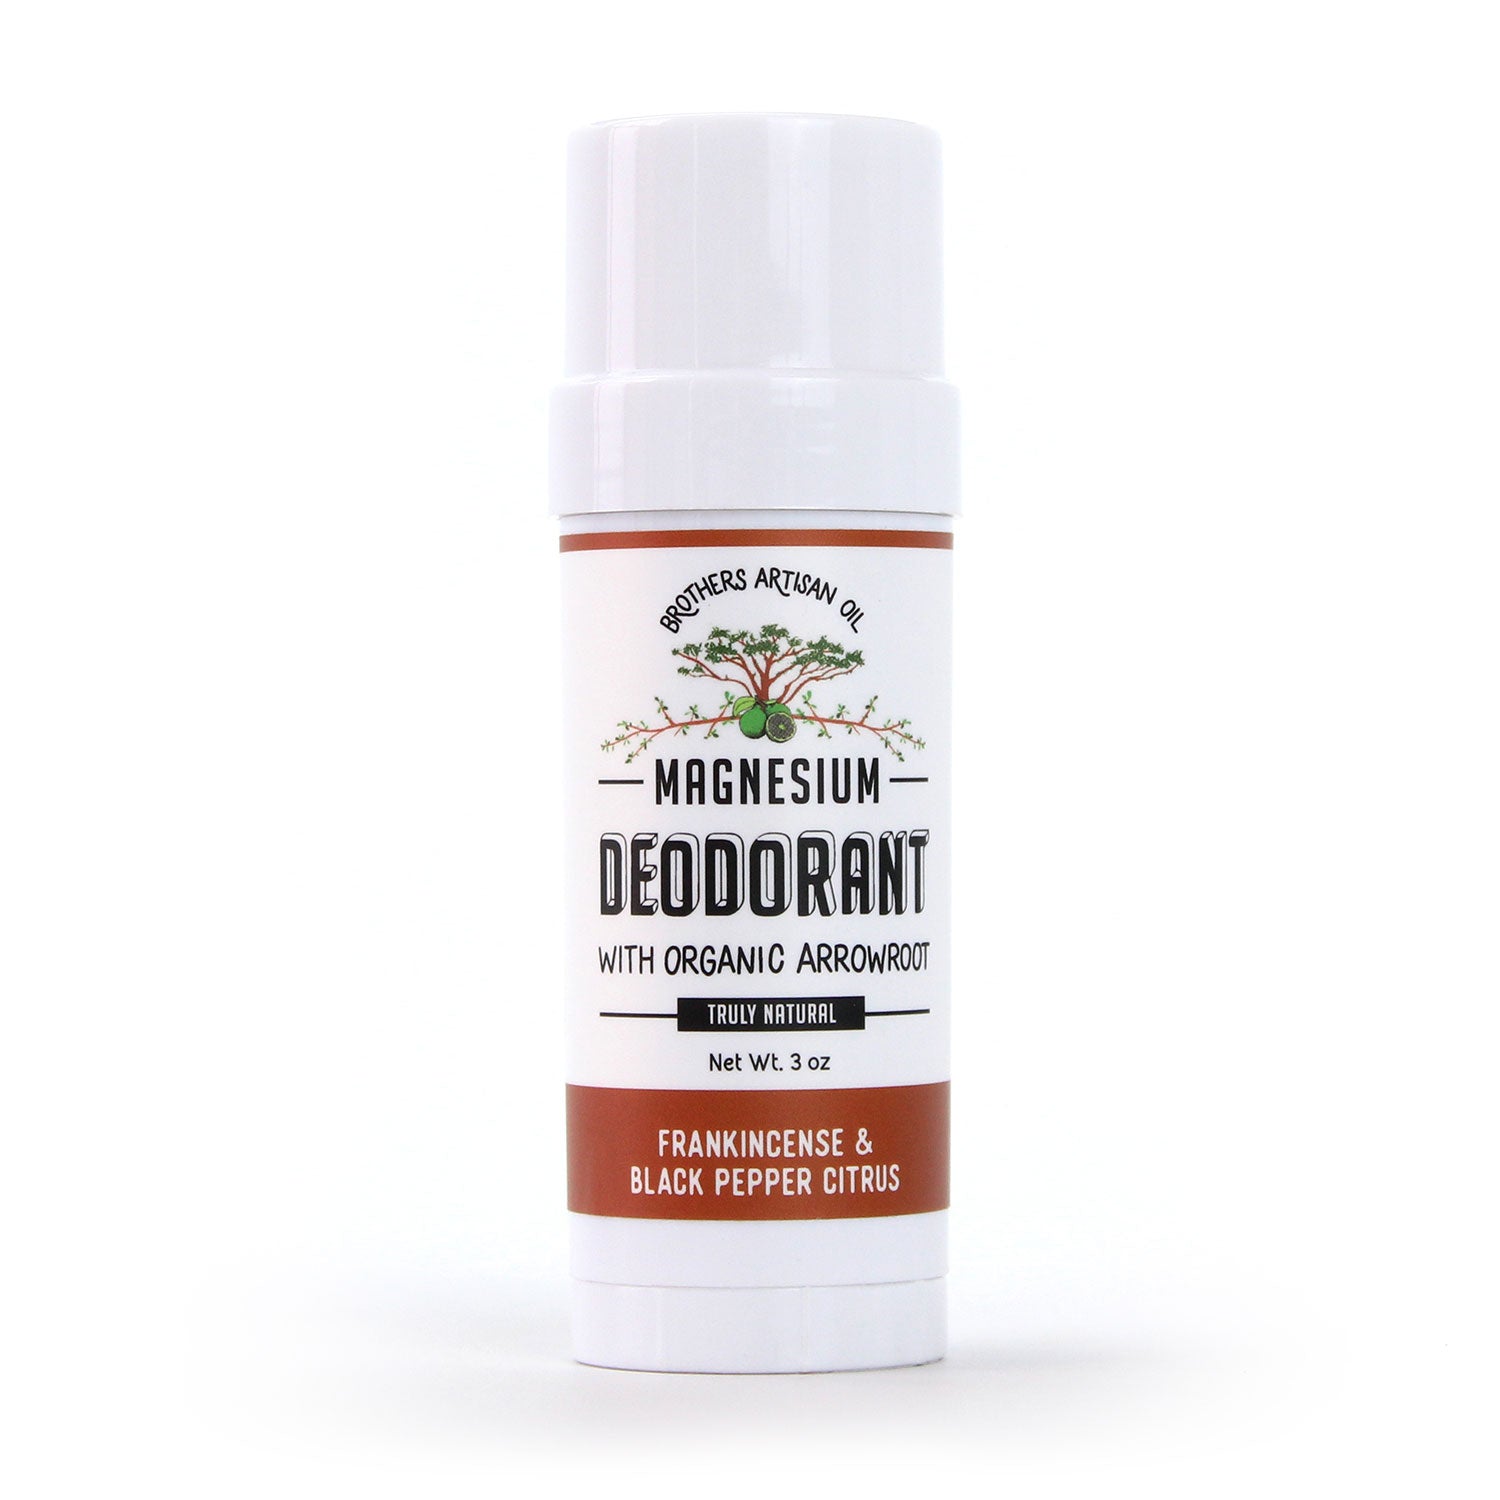 The Magnesium Deodorant: Frankincense & Black Pepper Citrus